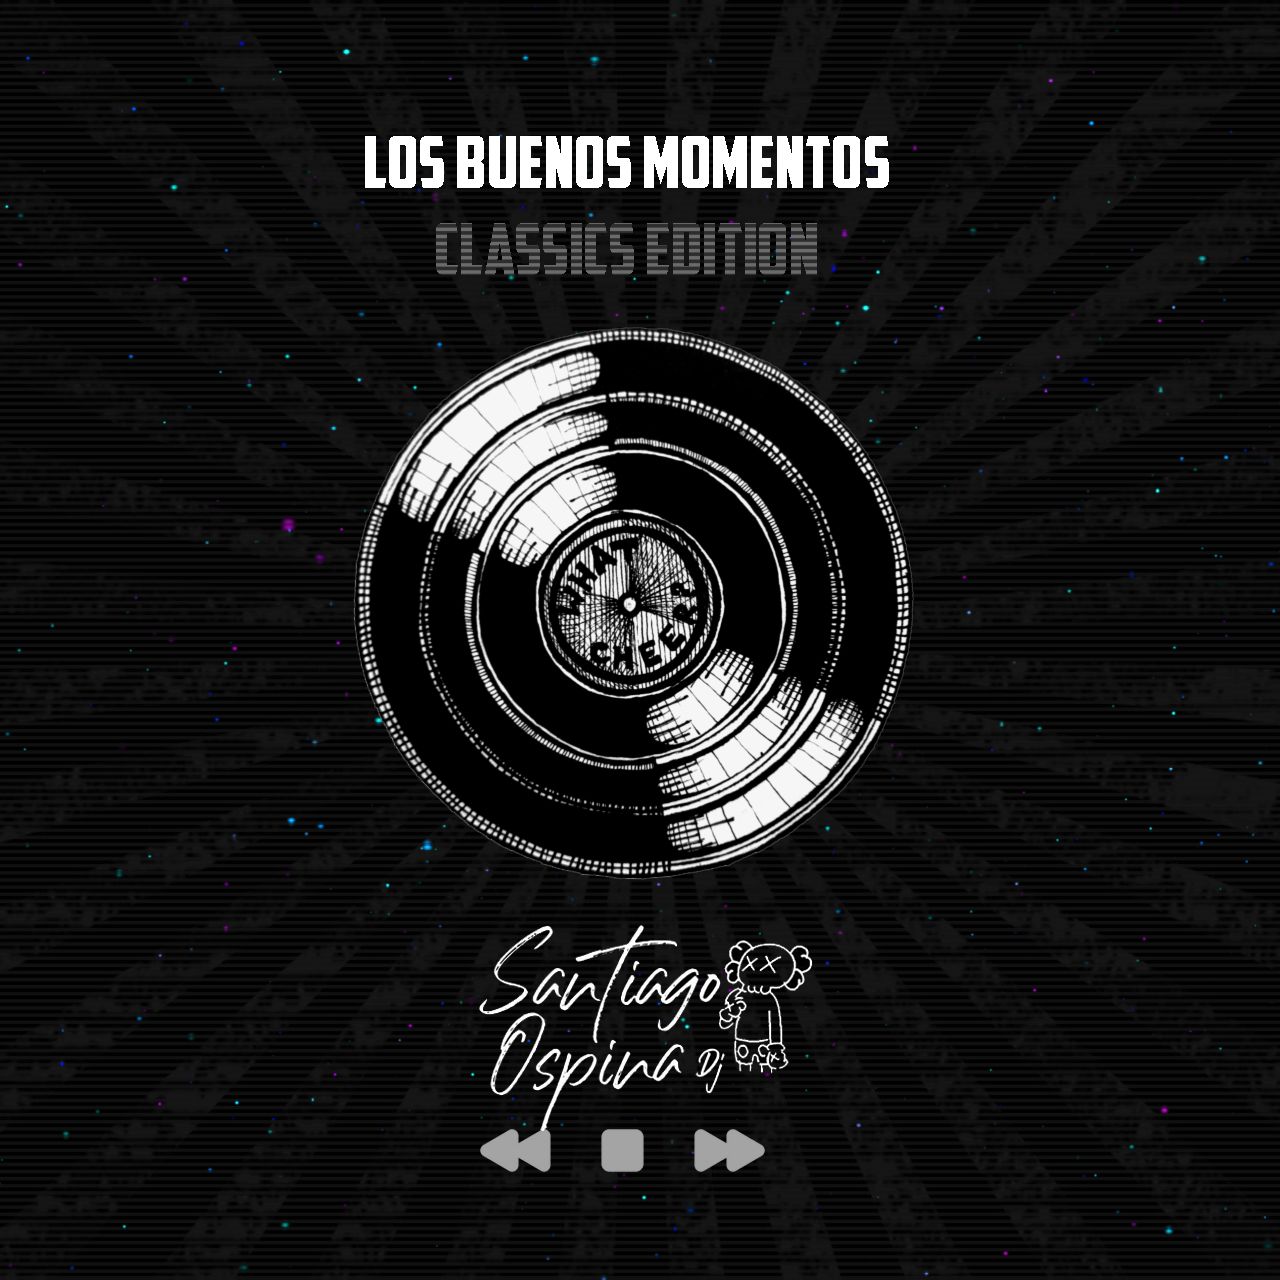 הורד LOS BUENOS MOMENTOS - SANTIAGO OSPINA DJ